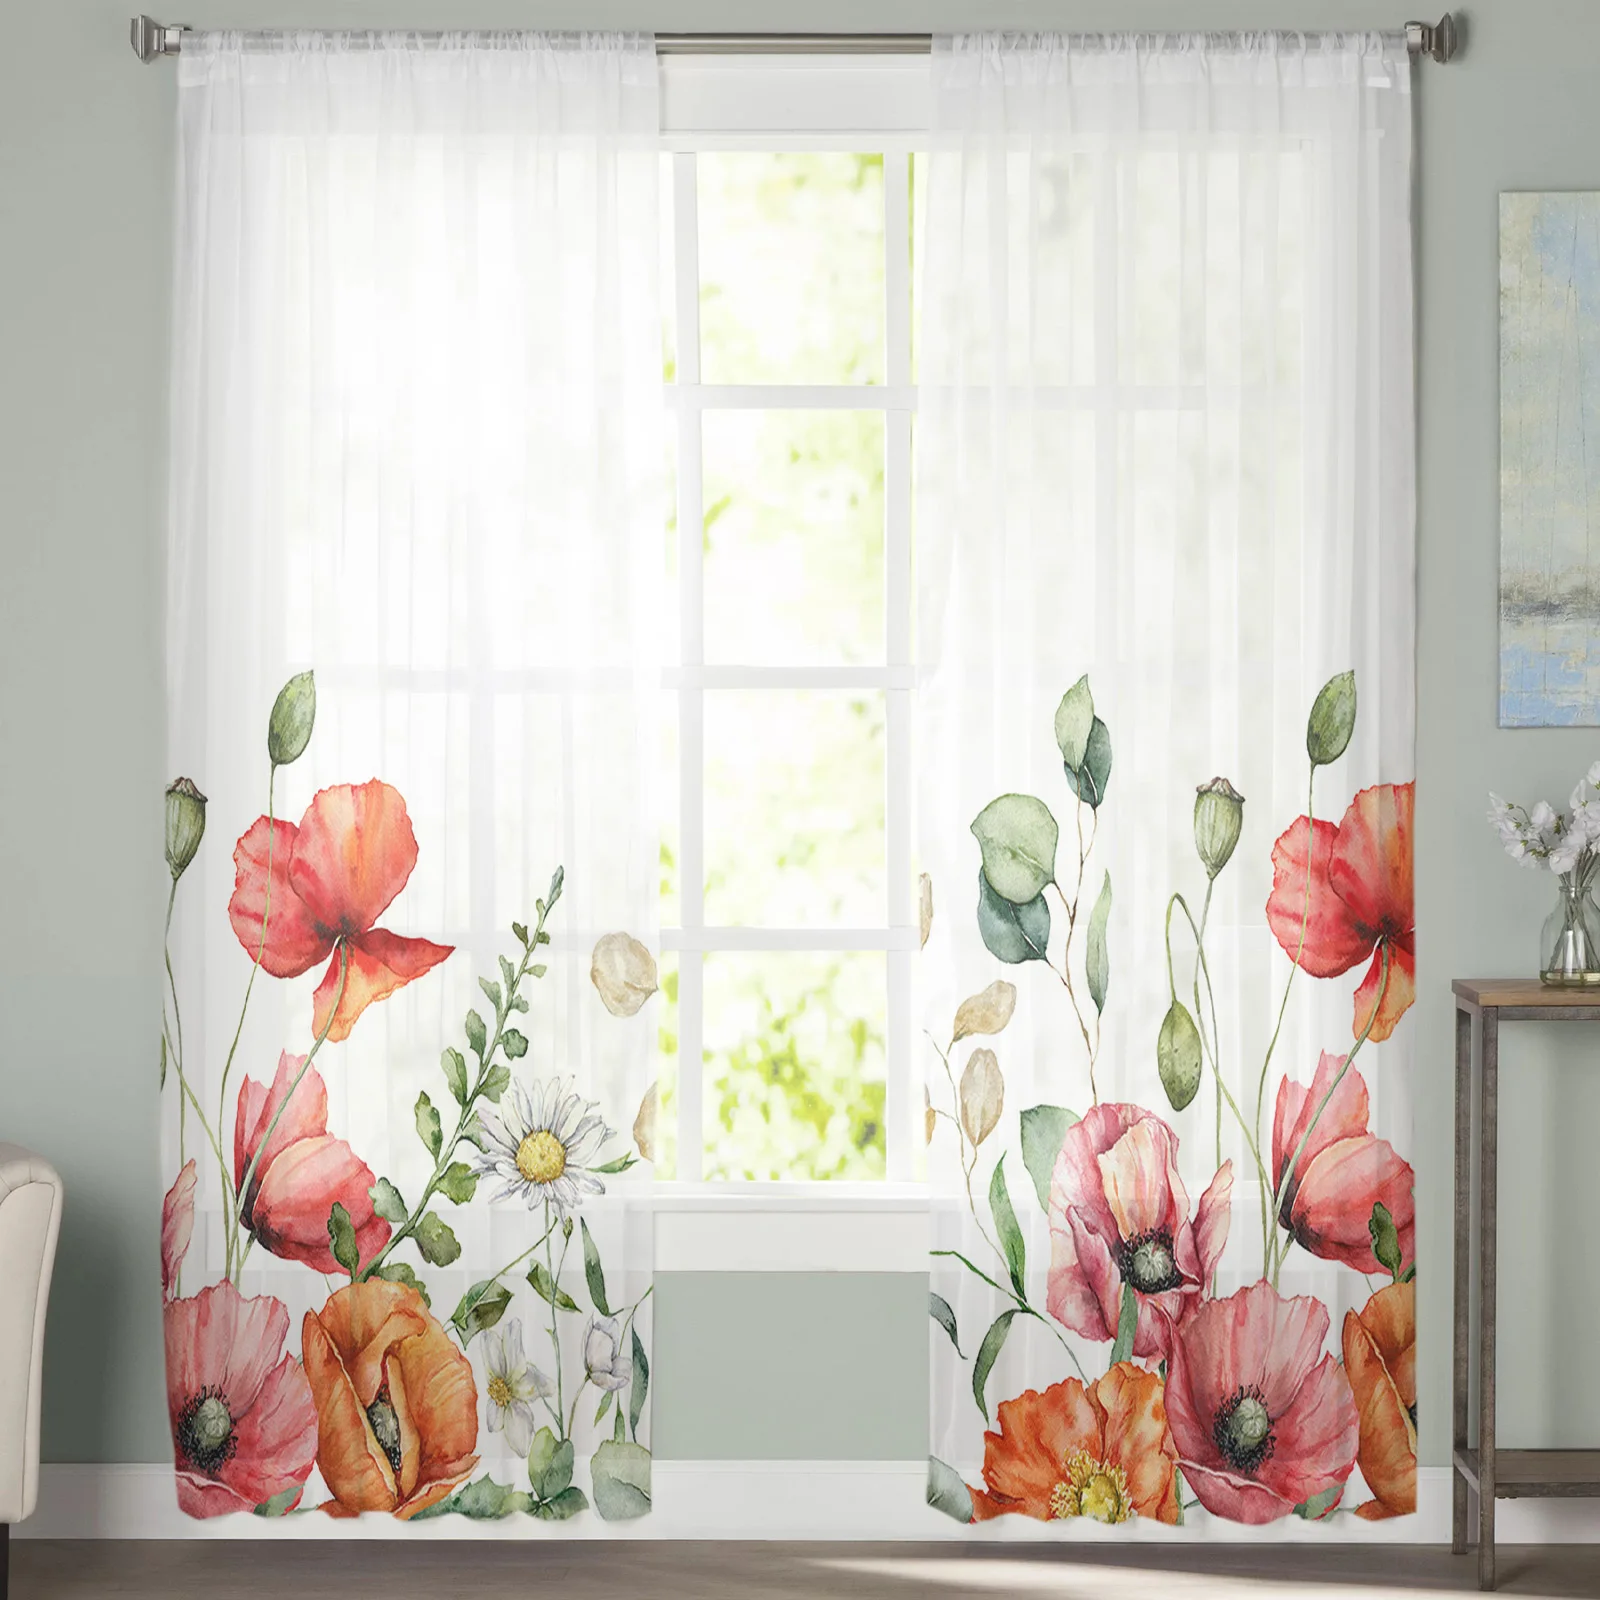 צמח טרופי אקליפטוס פרח הפרג טול וילונות עבור חדר שינה בעיצוב הבית הסלון המטבח ואל וילונות, וילונות עיוור